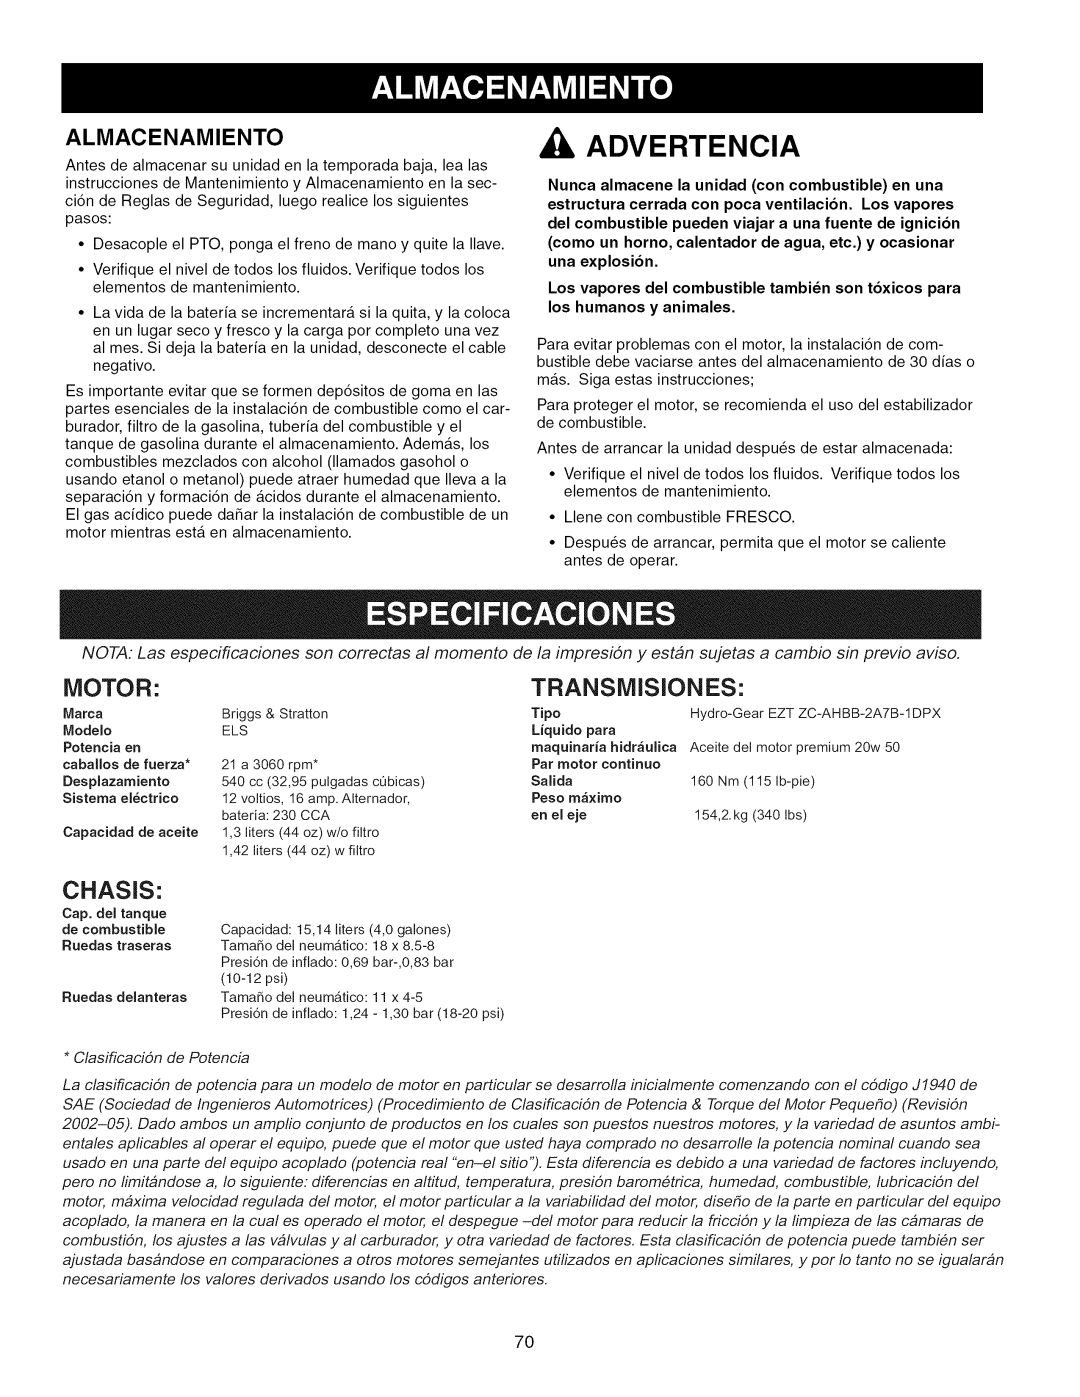 Craftsman 107.289860 manual Motor, Transmisiones, Chasis, Almacenamiento, Advertencia, Modelo, Liquido para, Potencia en 